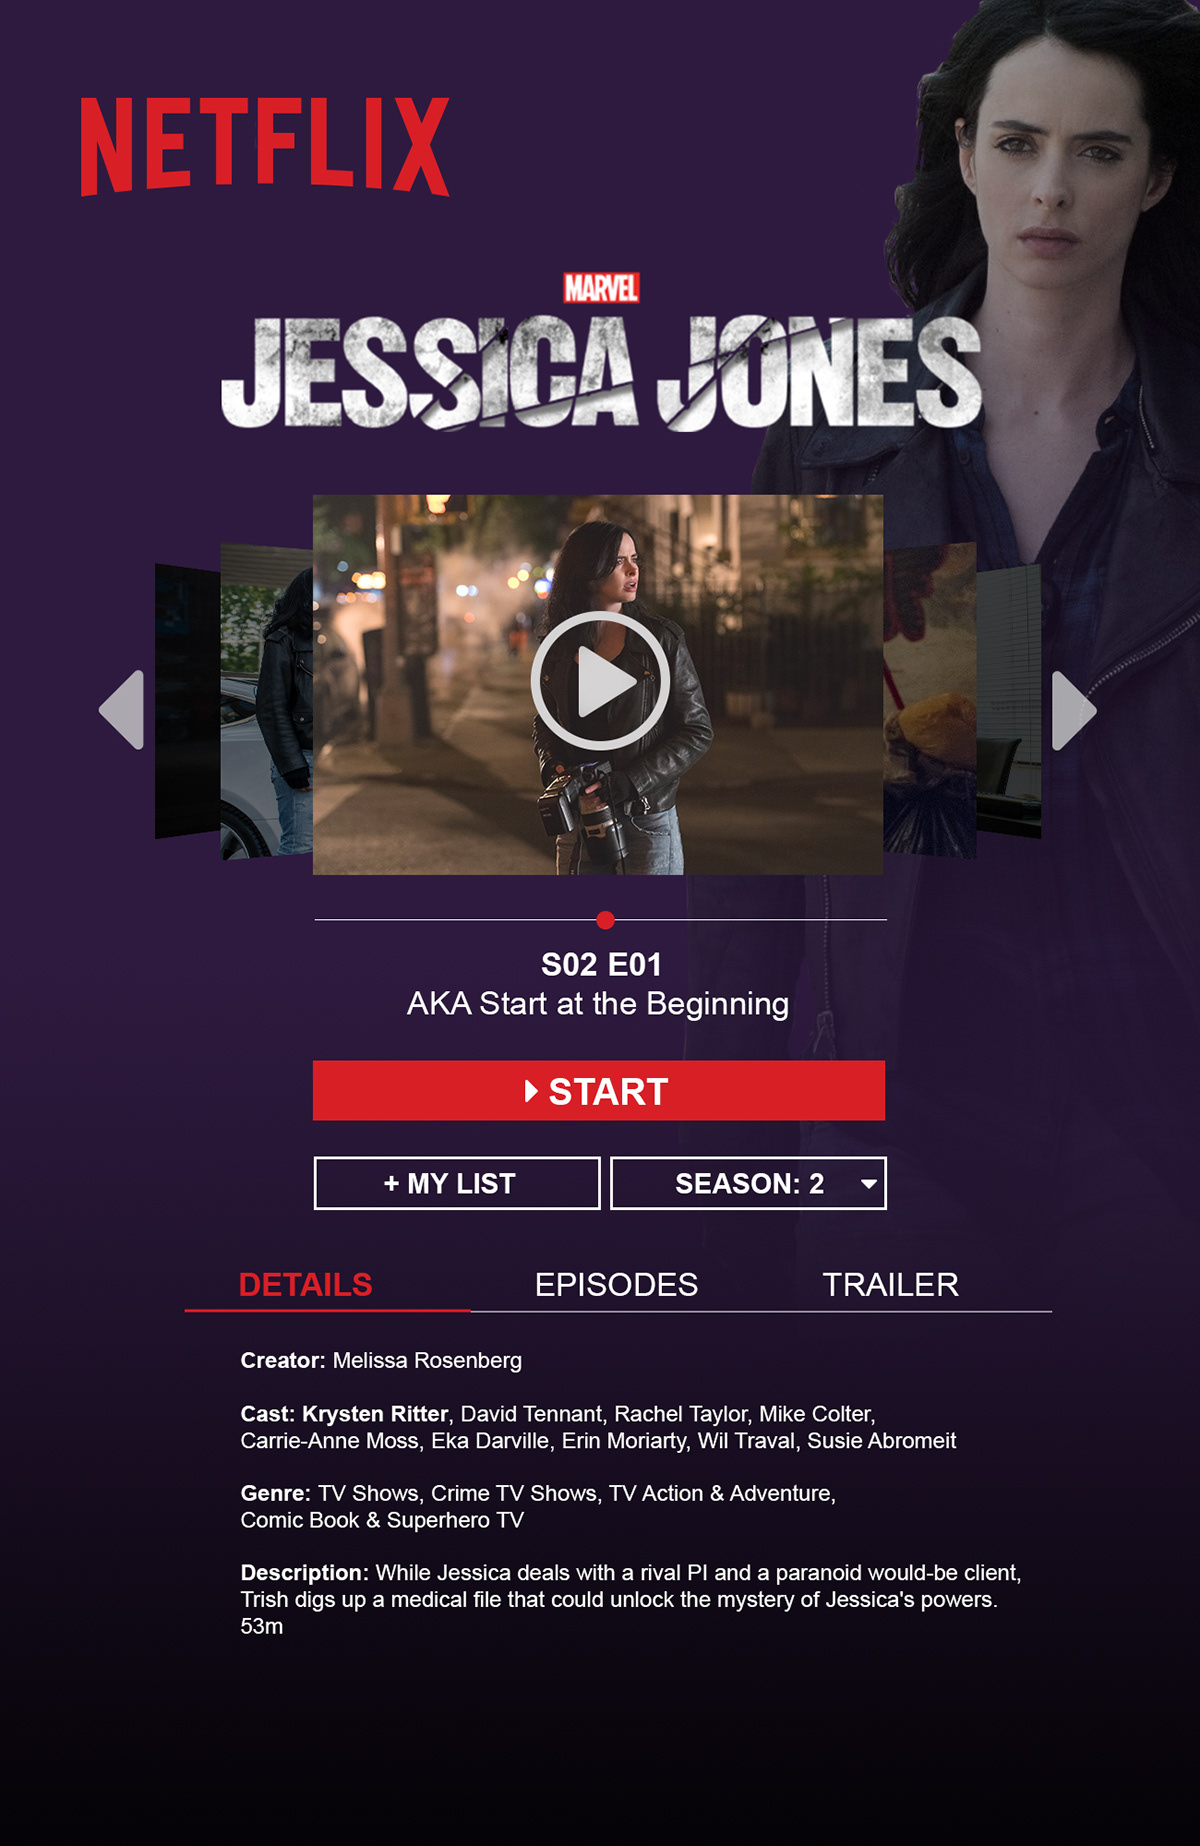 jessica jones Netflix desktop mobile advertisement